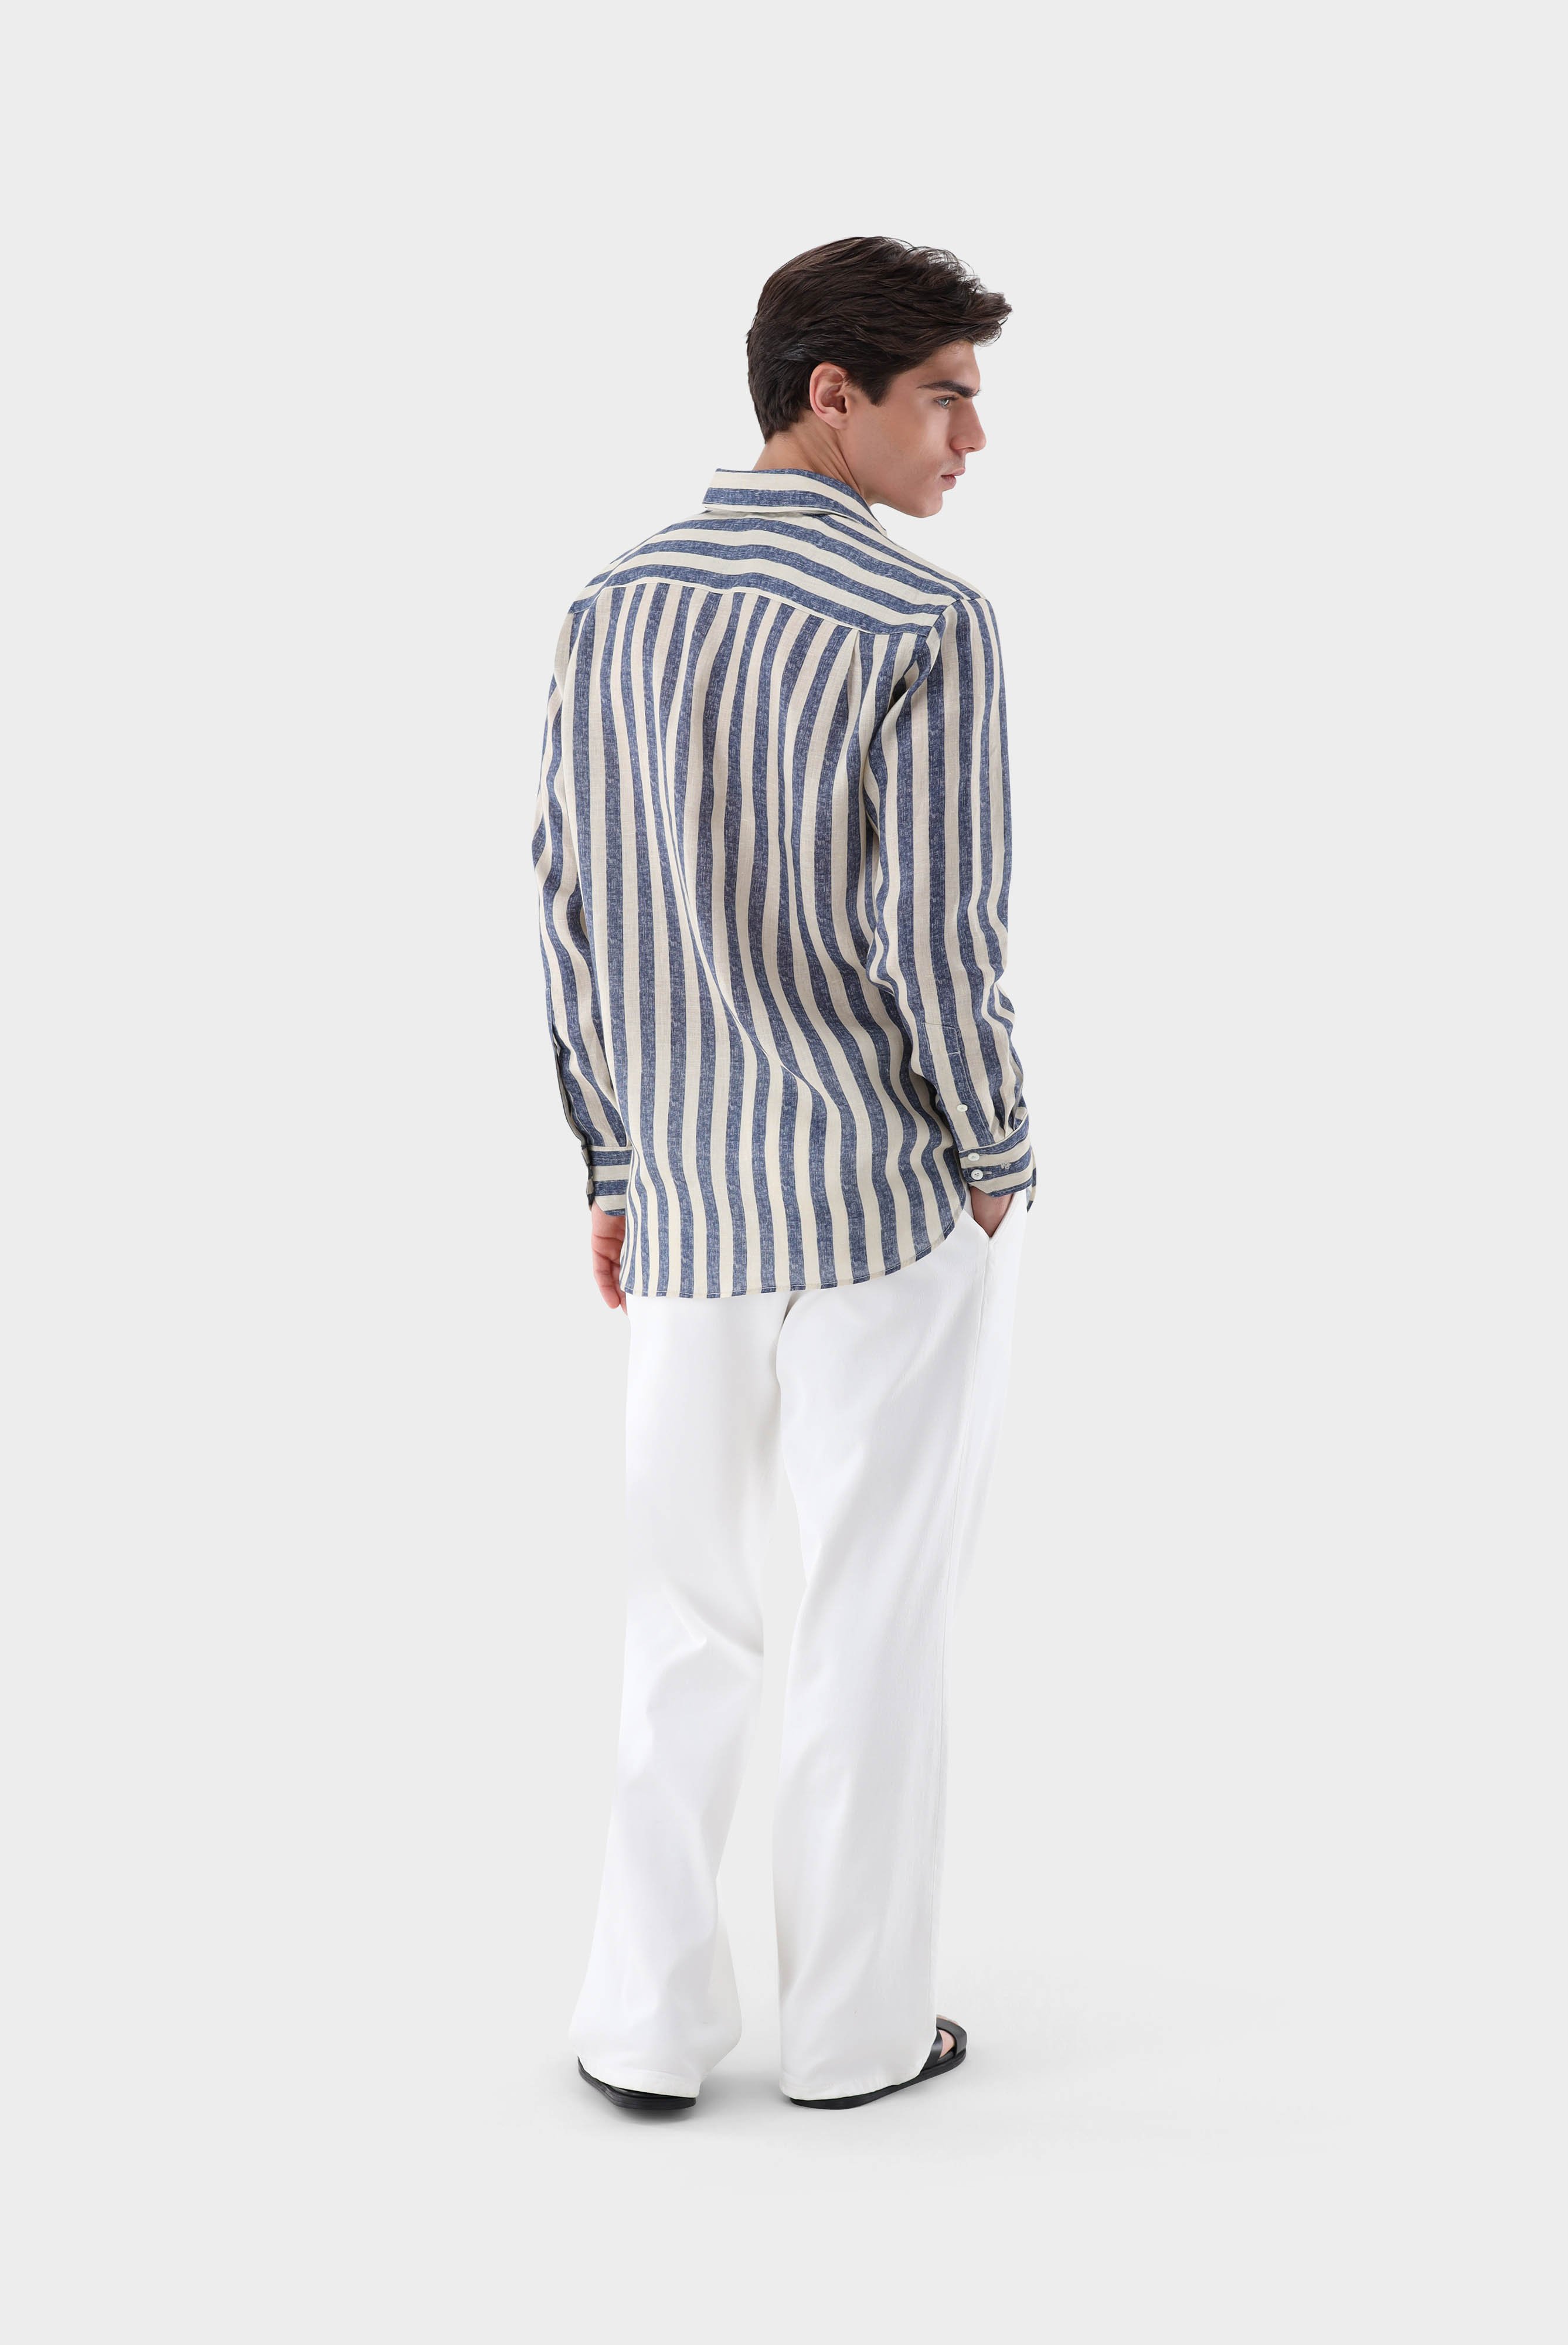 Casual Hemden+Leinenhemd mit breiten Streifen Comfort Fit+20.2021.9V.170356.761.40